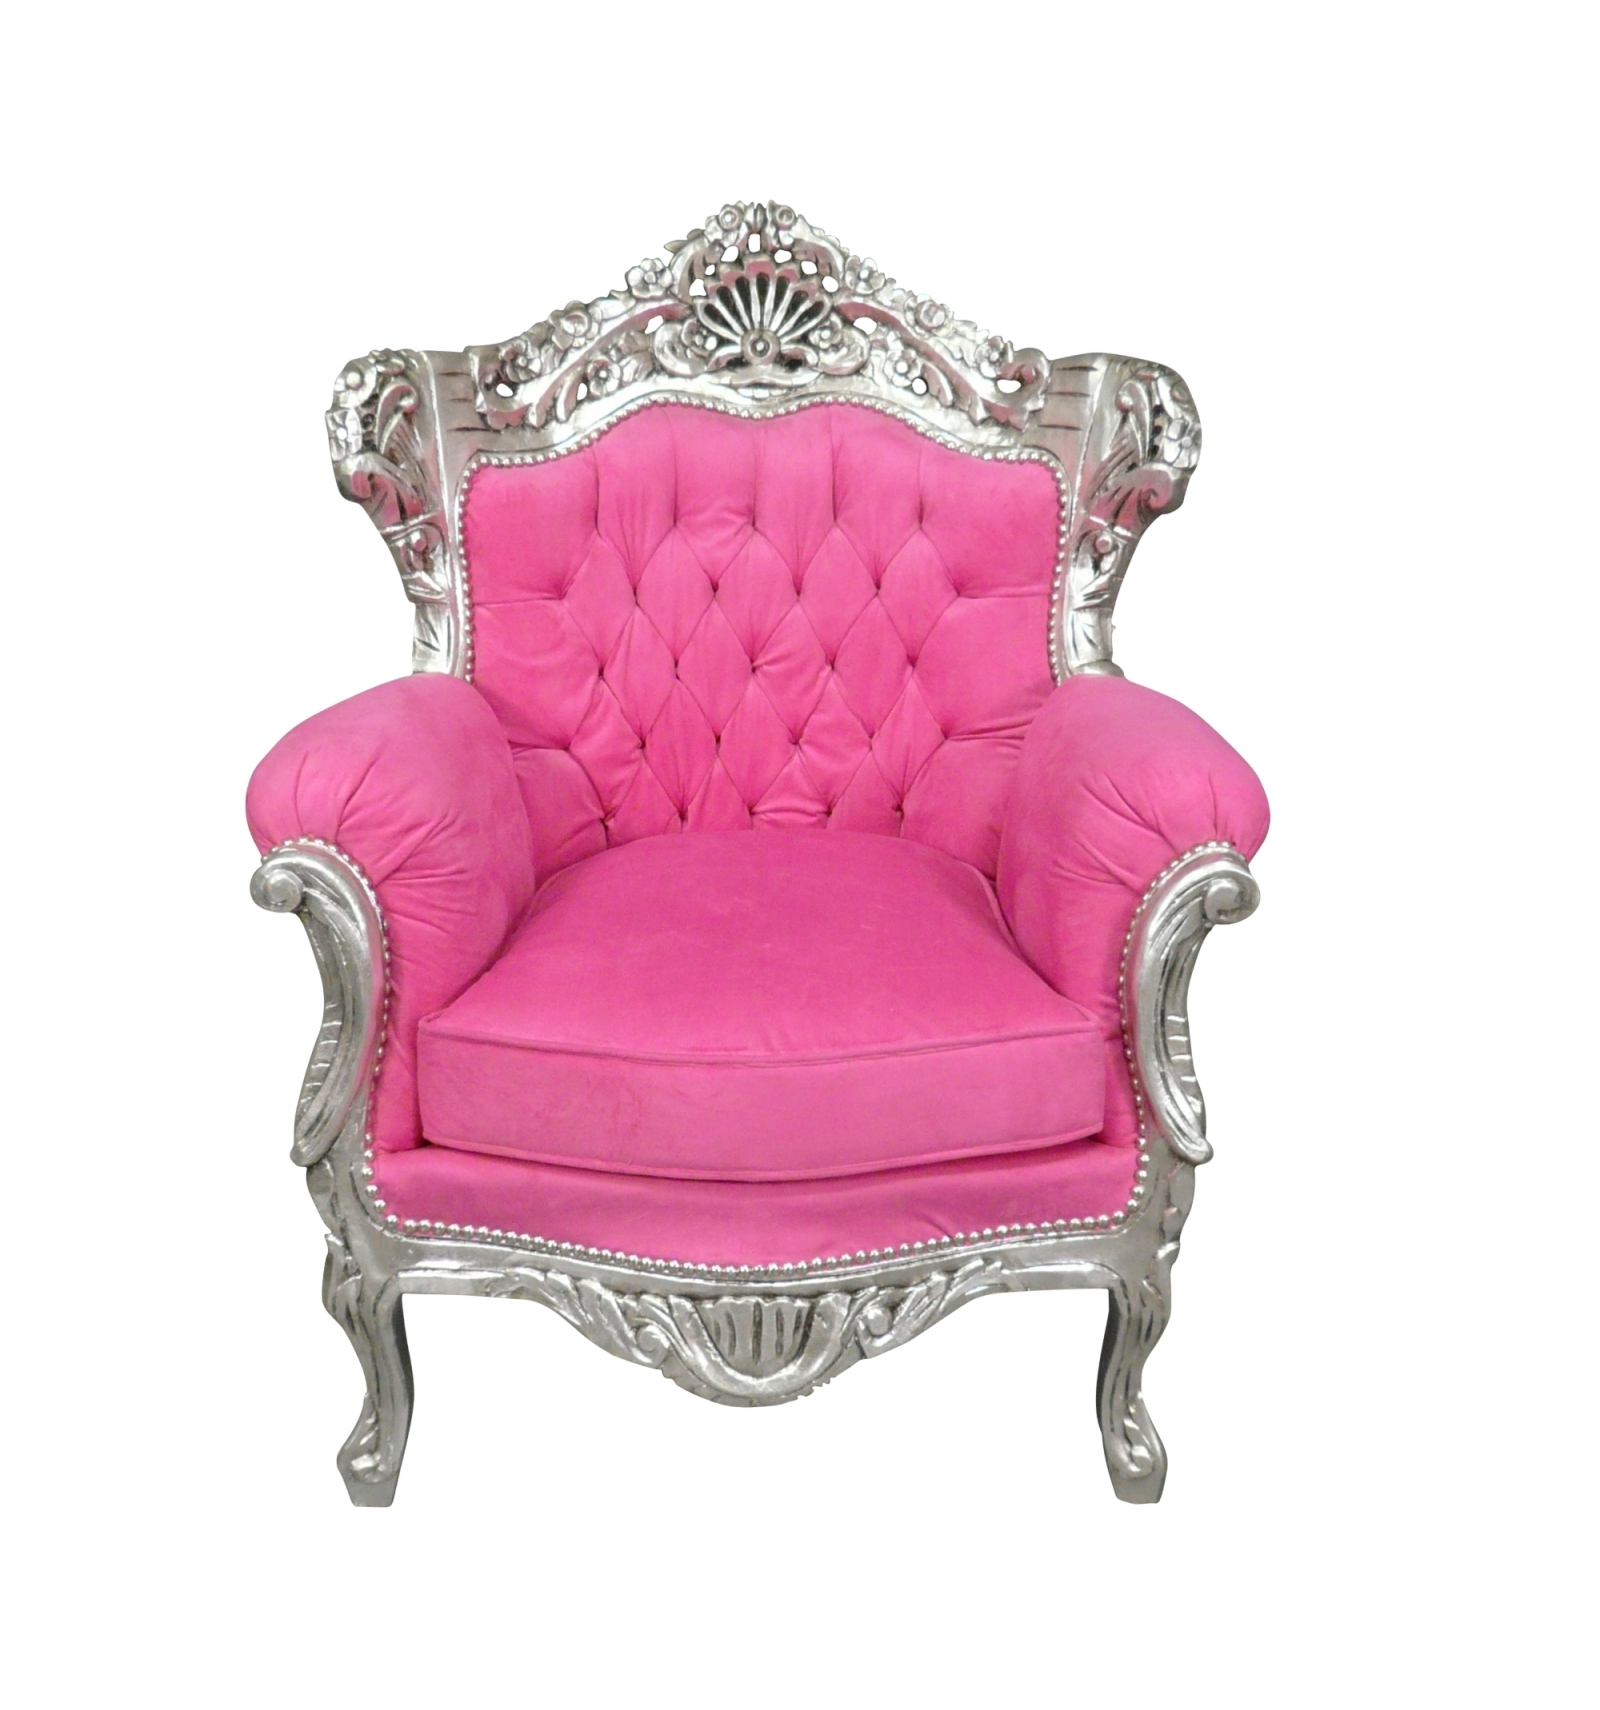 Veel gevaarlijke situaties Lunch ik wil Rococo roze barokke fauteuil - Roze en zilveren barok meubilair